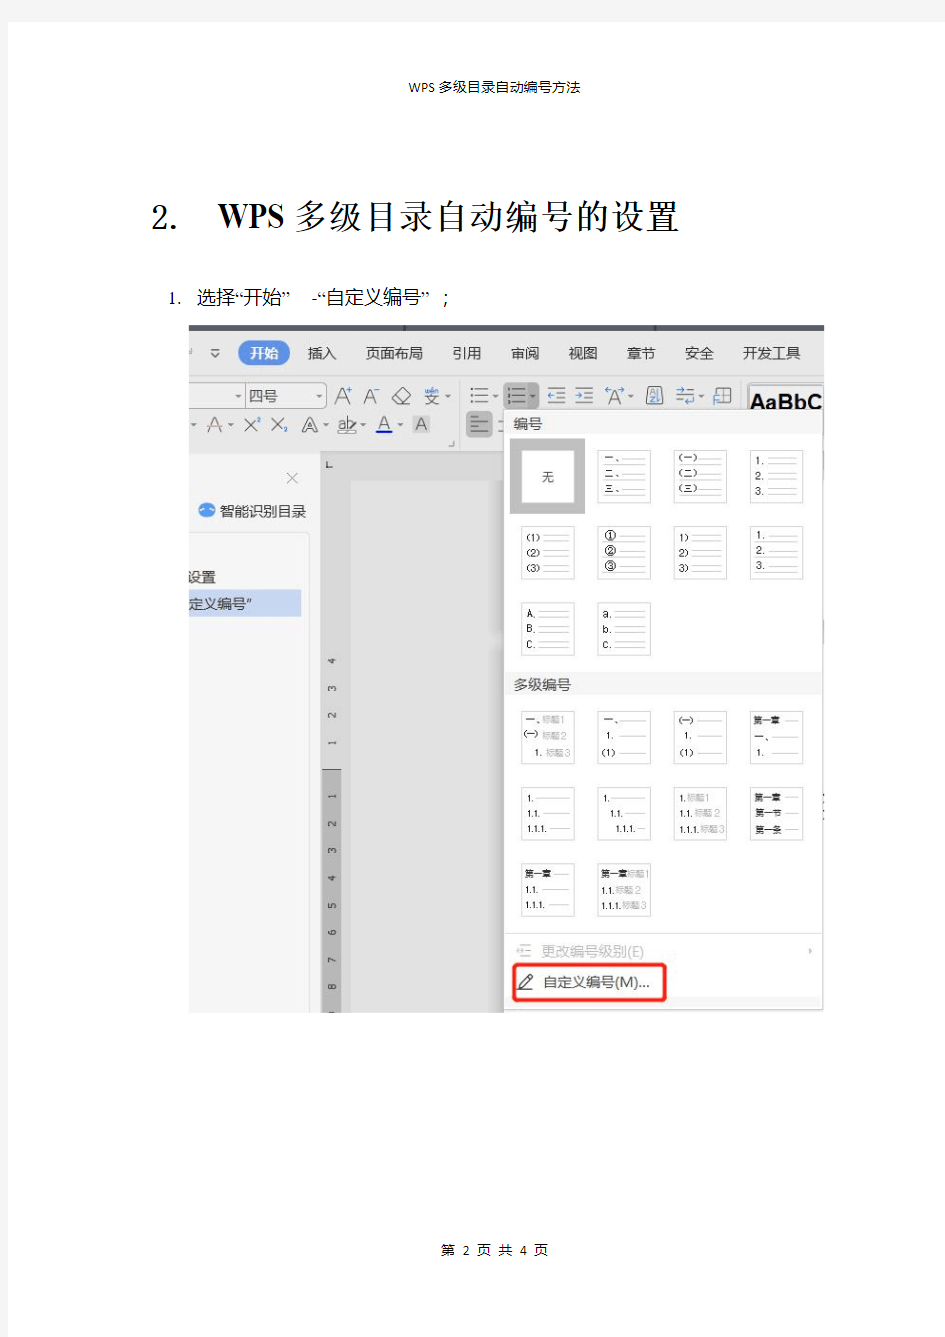 WPS文档多级目录自动编号方法